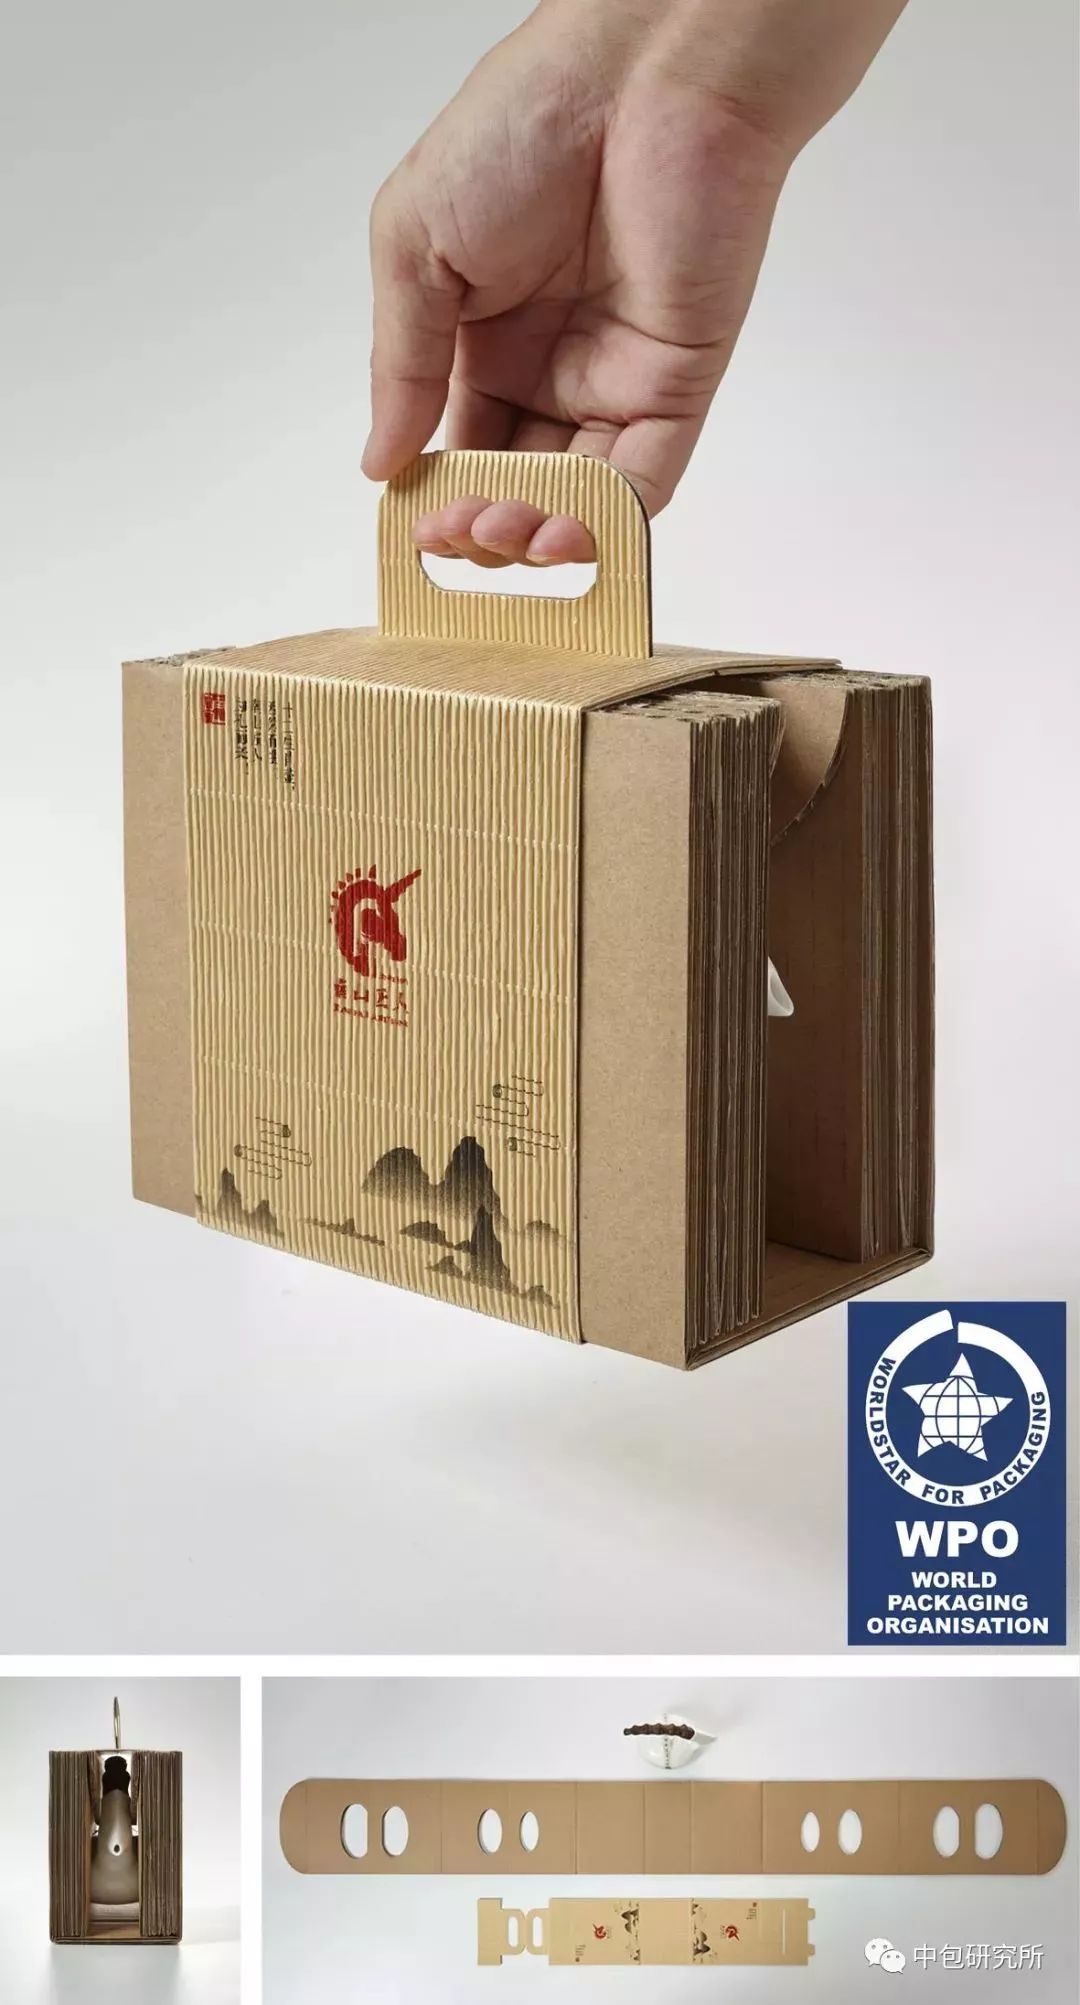 作品名称:南山匠人羊壶包装报送单位:深圳市绿尚设计顾问有限公司作者